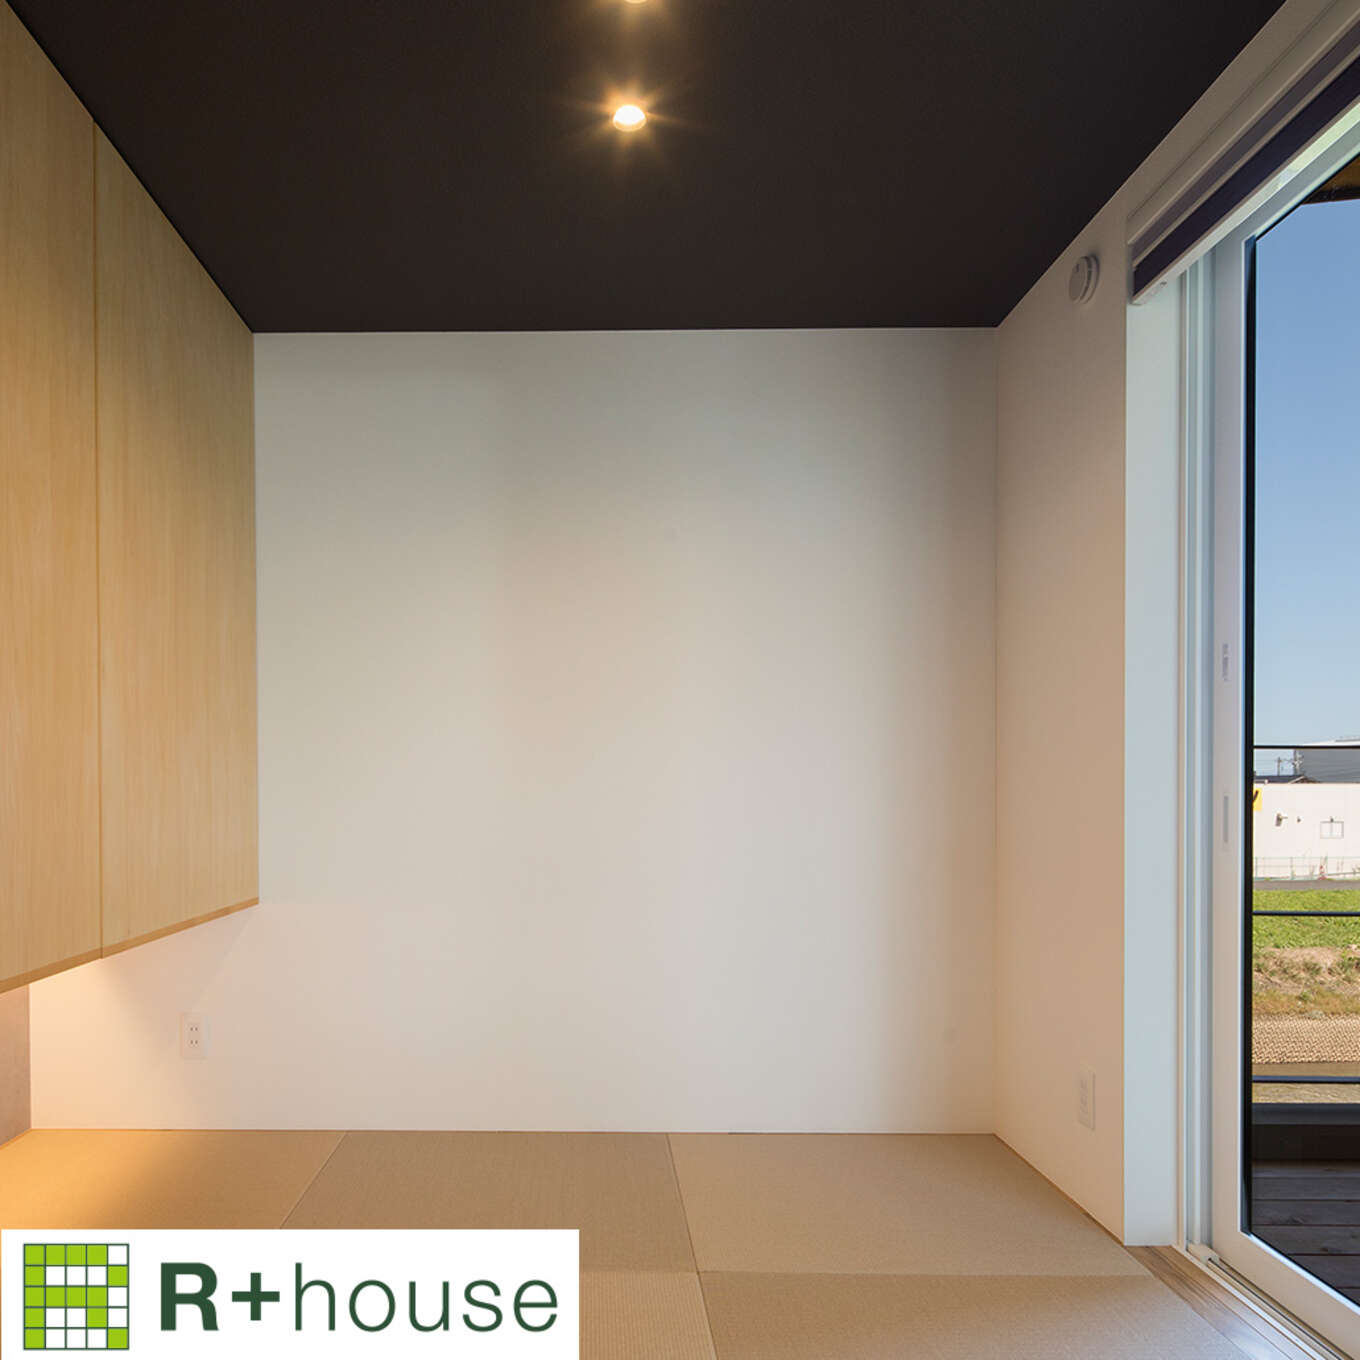 R+houseの物件の畳コーナーの写真です。左側には収納右側にはバルコニーにつながる窓があり明るく開放的。